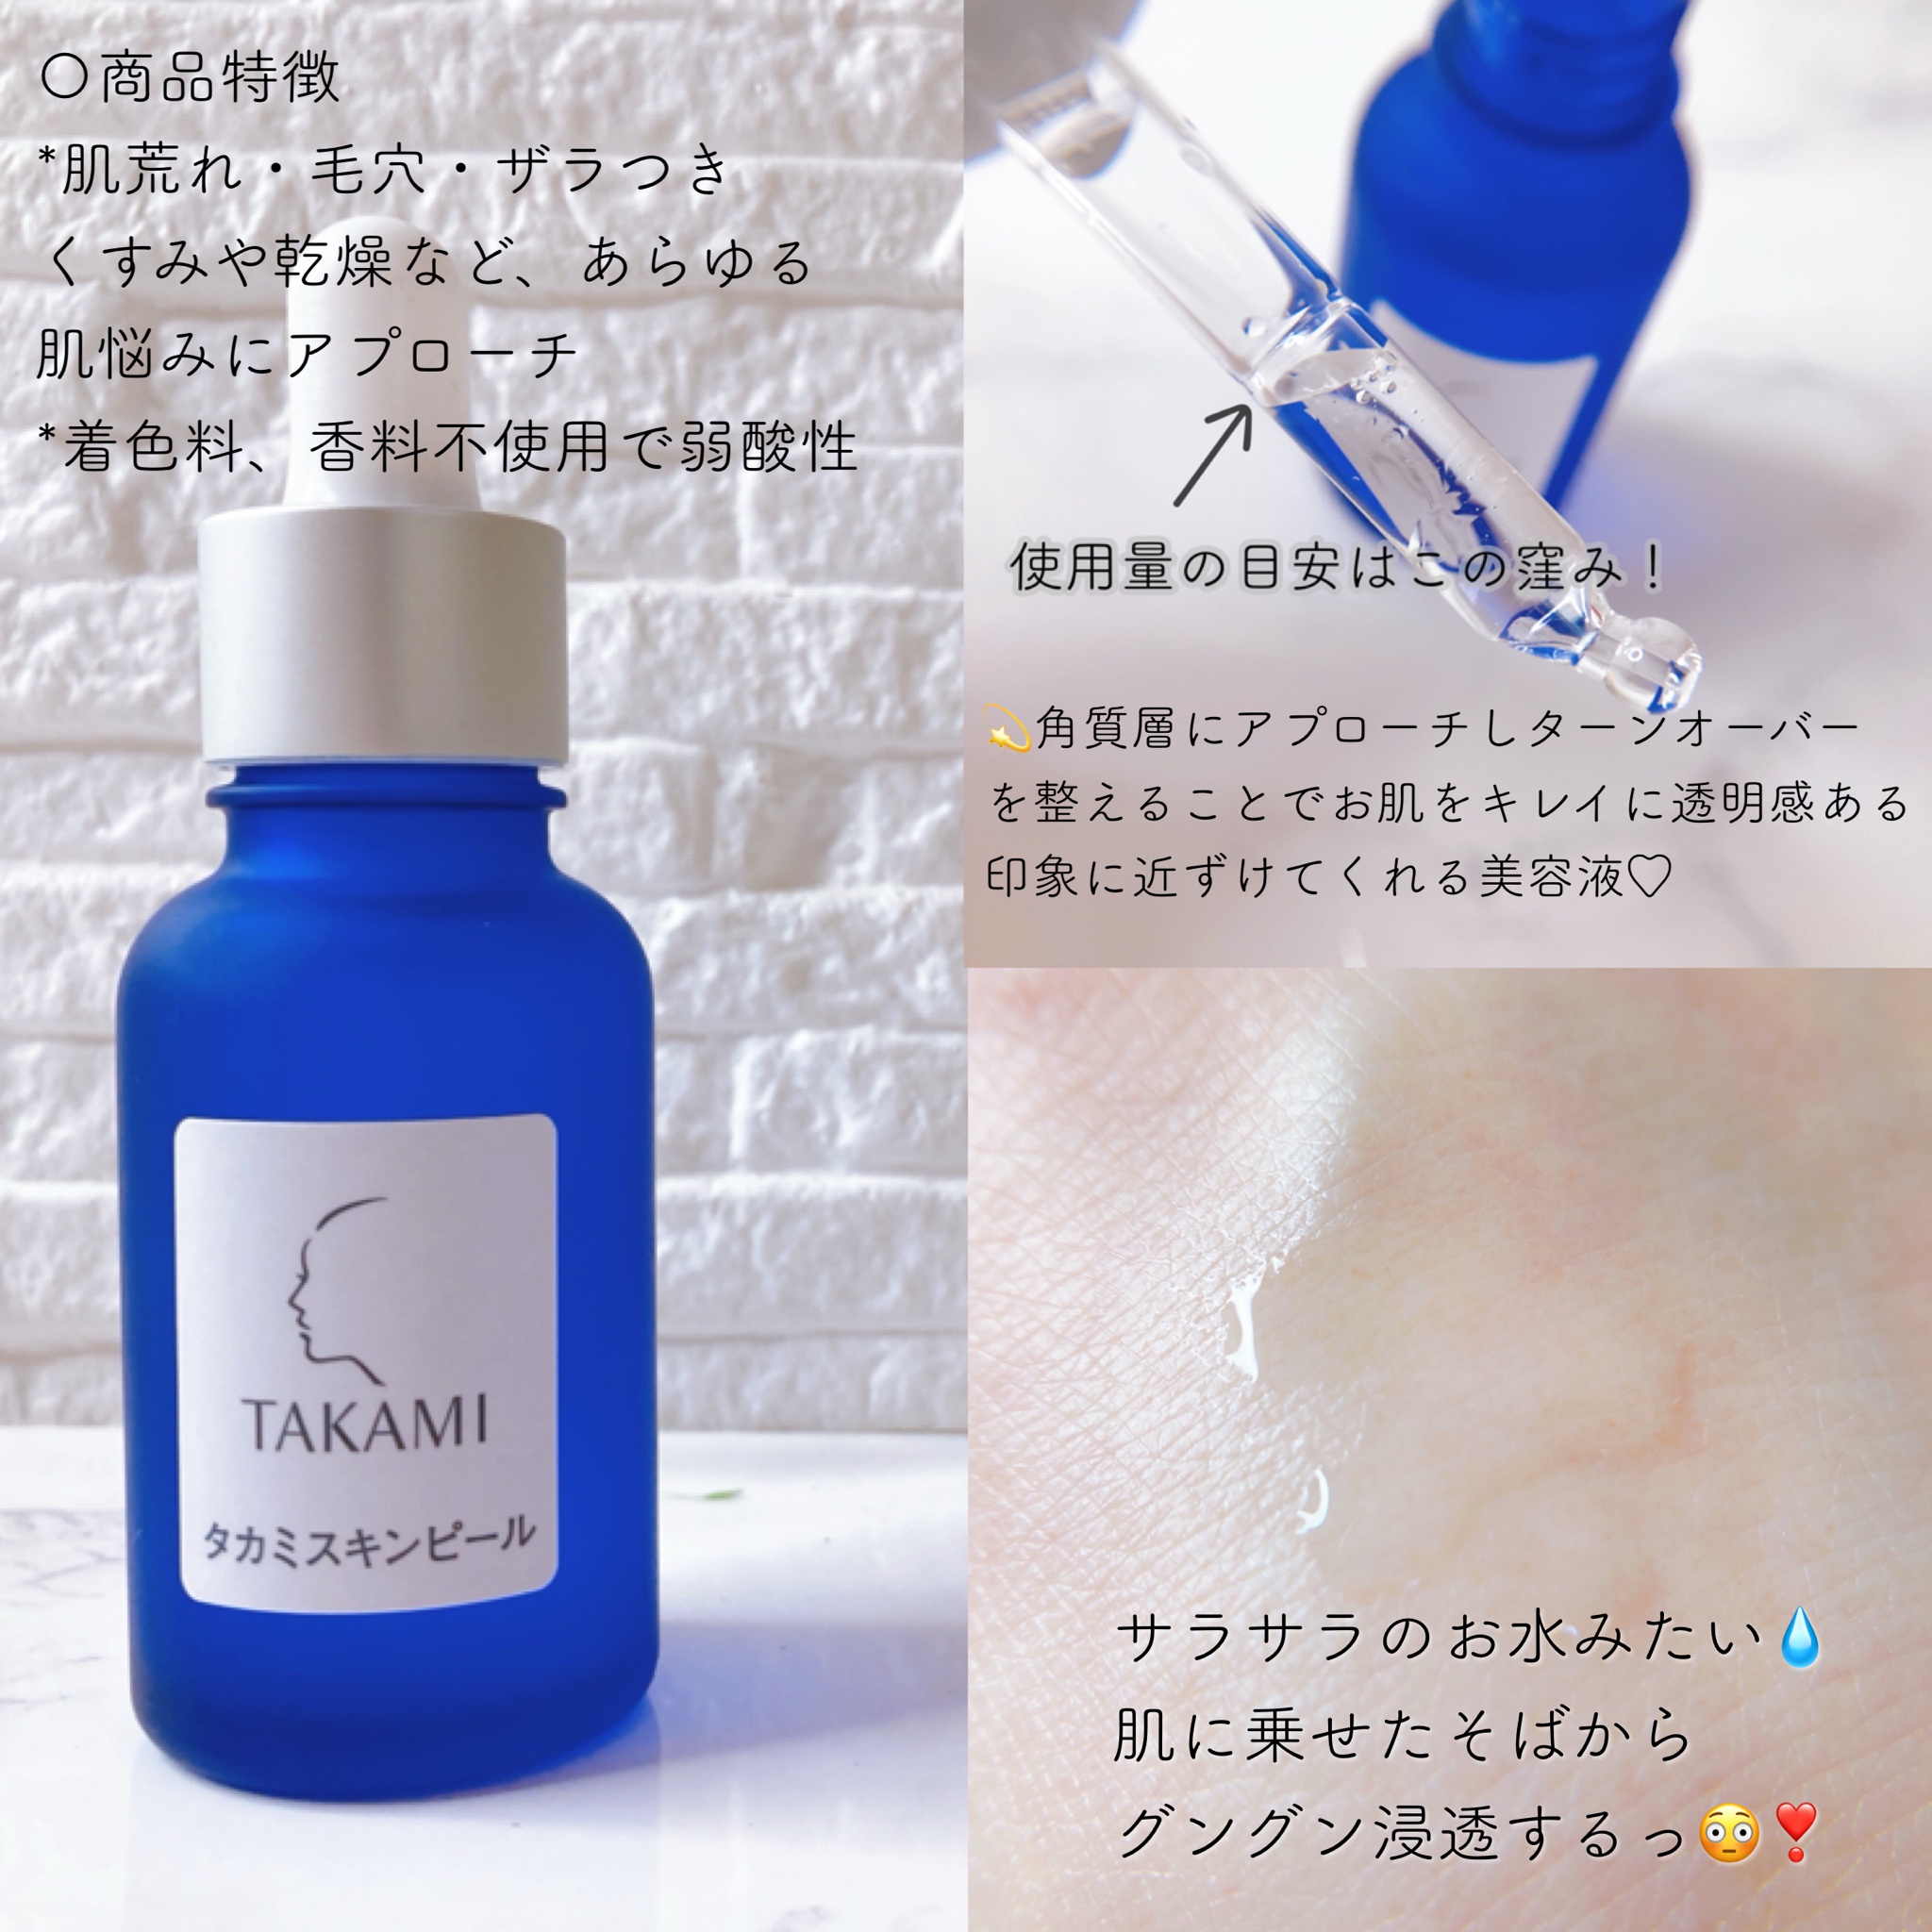 3点セット 新品 未開封 TAKAMI タカミ スキンピール 角質美容液30ml×3